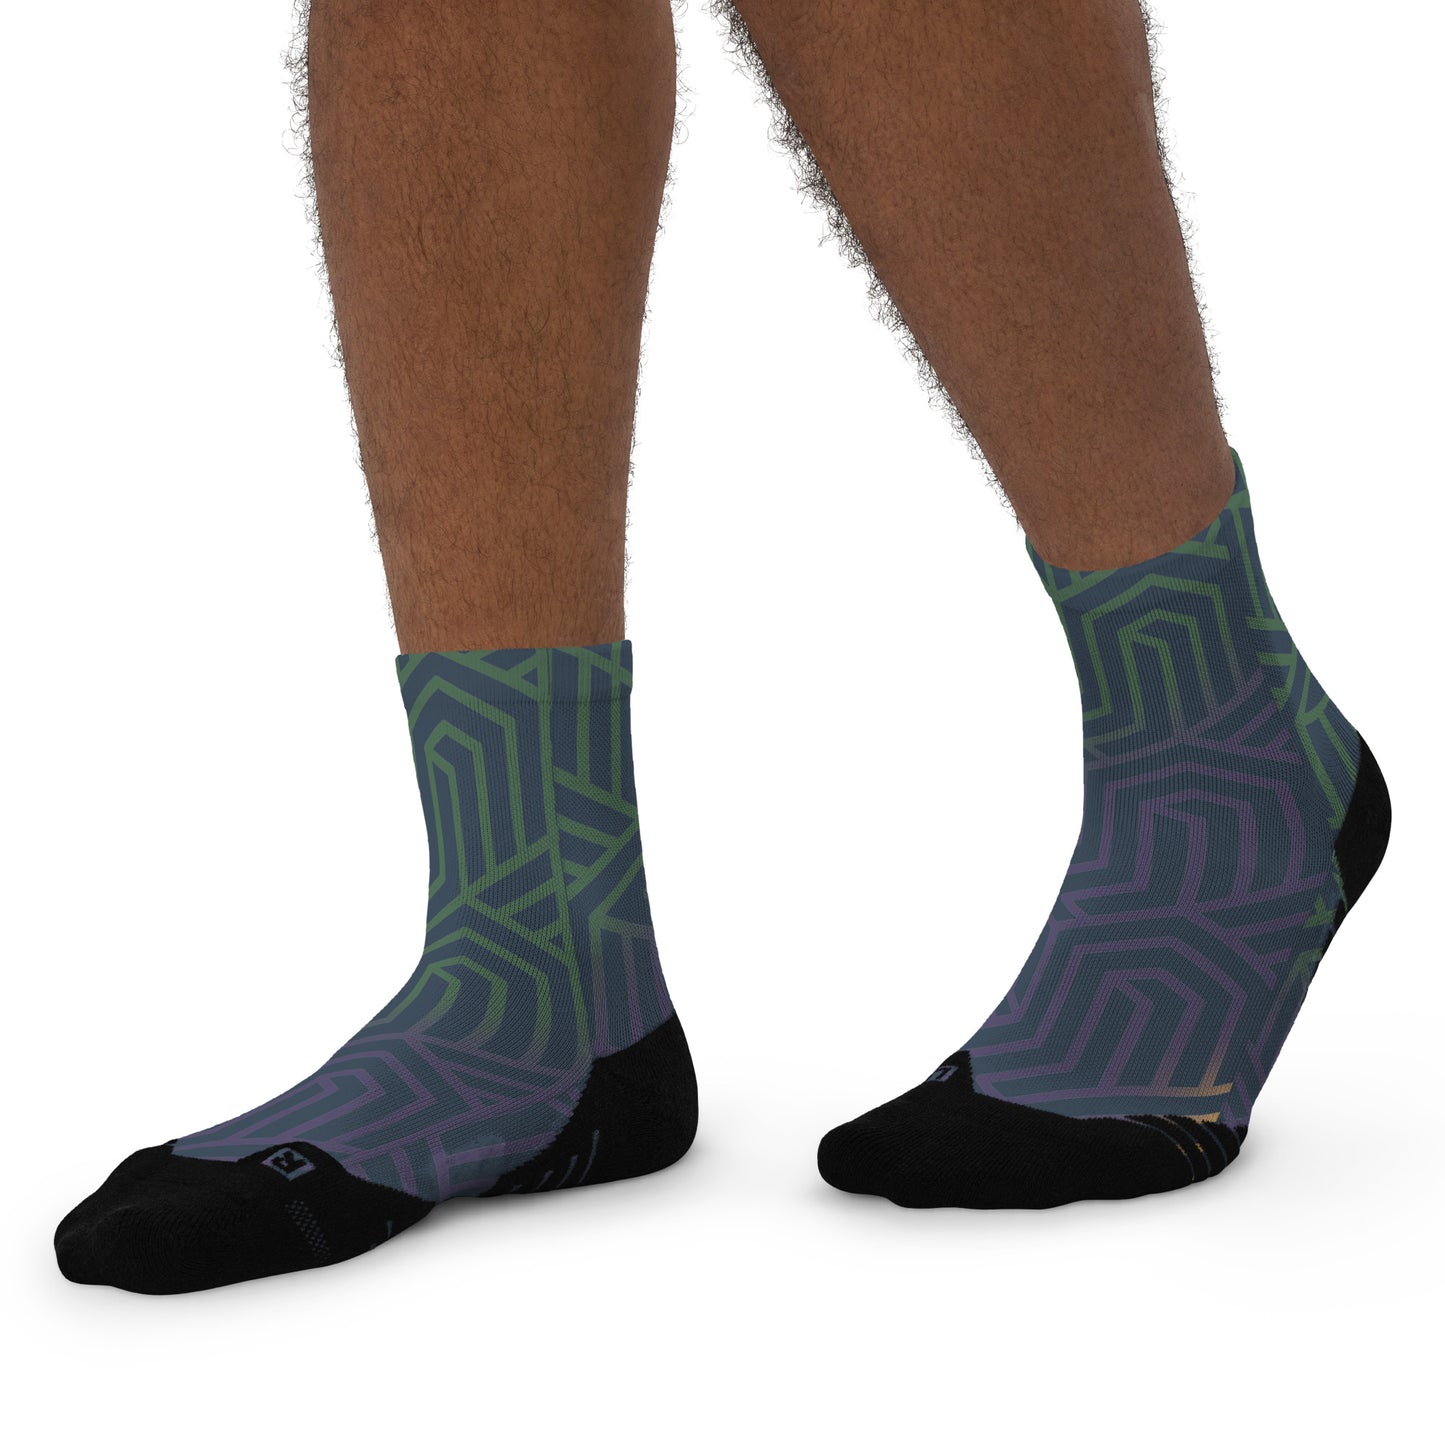 Sockadelic Hosier Lane 02 Ankle socks